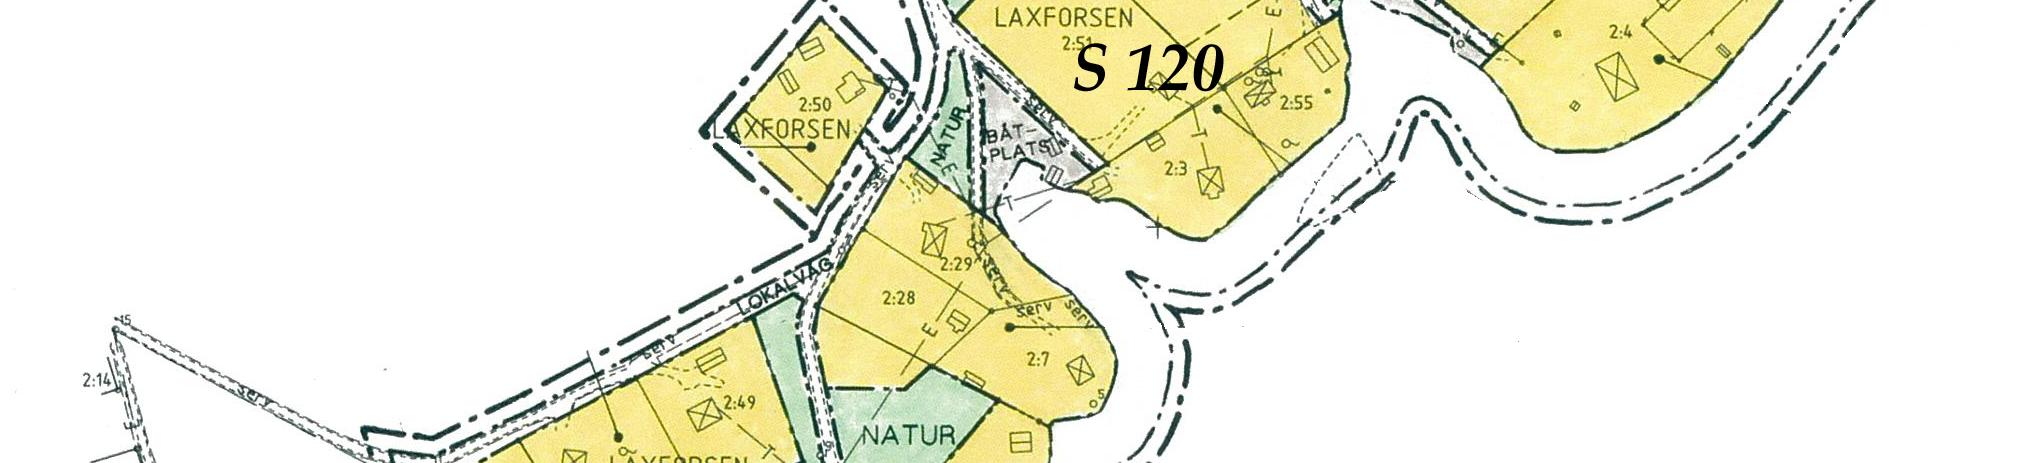 Planområdet gränsar till detaljplanen S 120 (kommunens beteckning), laga kraft juli 1996. Denna planläggning reglerar bostäder, naturområden och lokalgata.